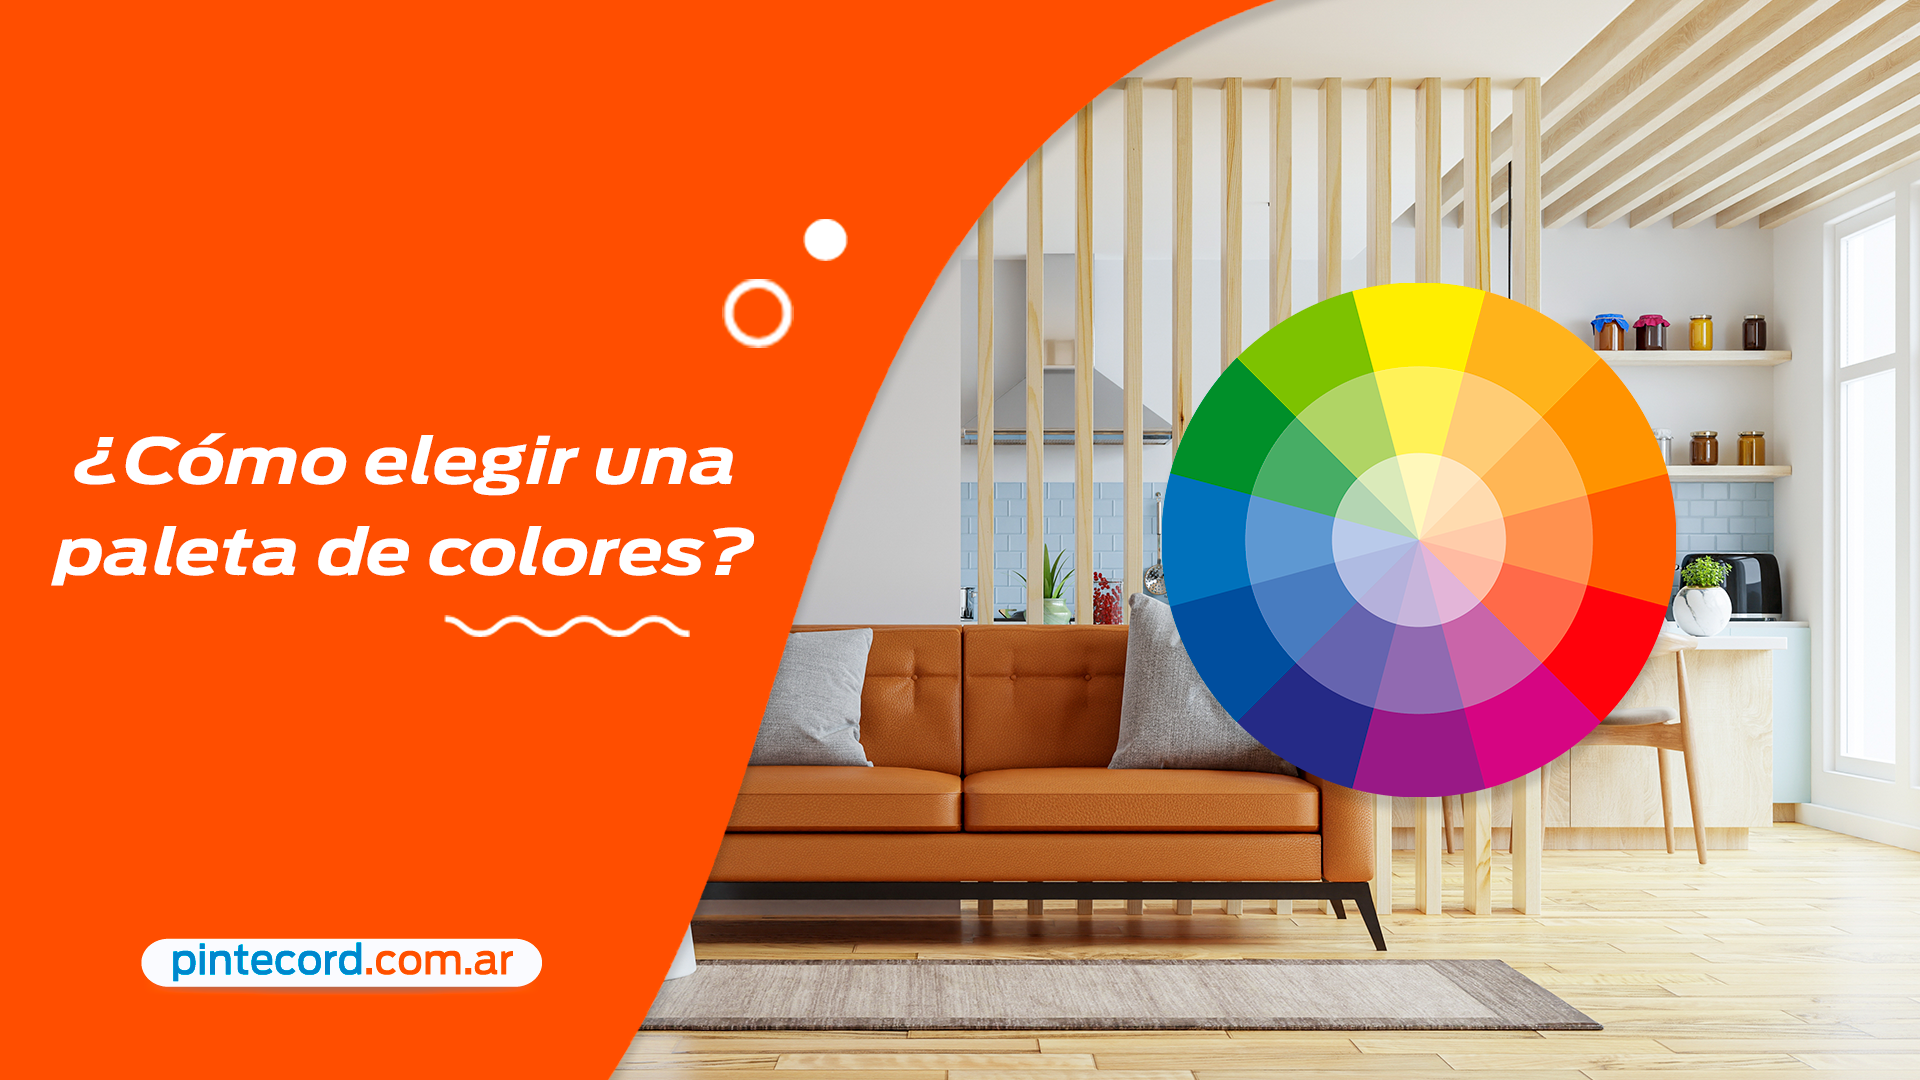 Escogiendo la paleta de colores perfecta para tu hogar